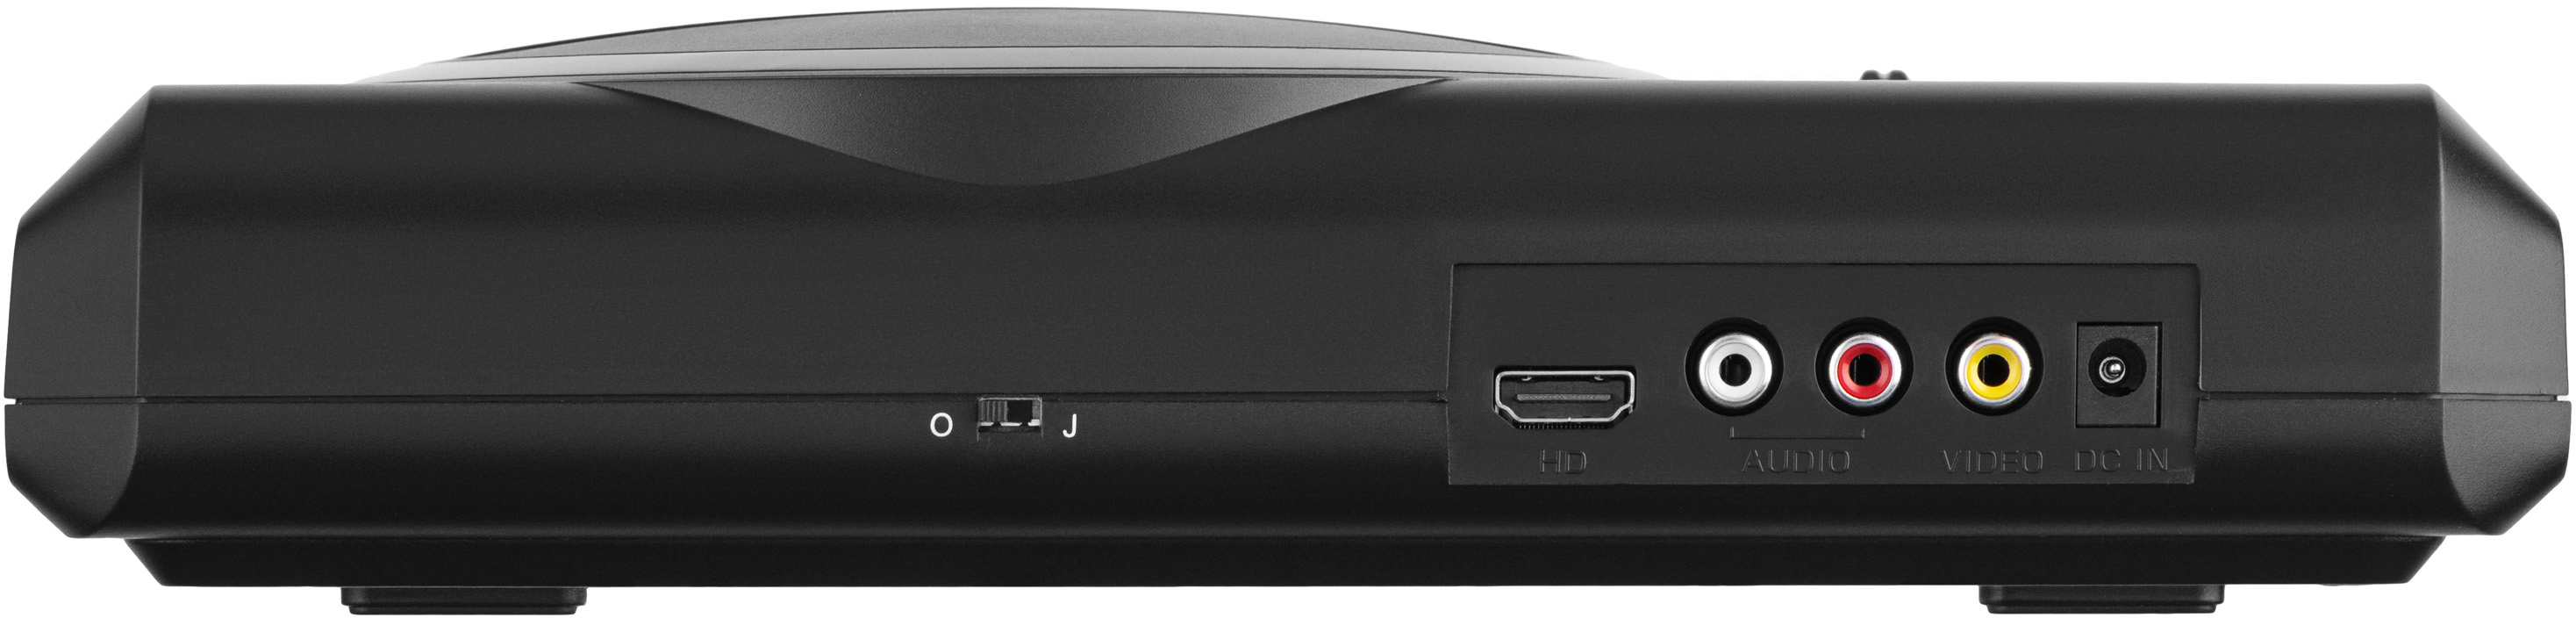 Игровая консоль 2Е 16bit c 2 беспроводными геймпада, HDMI 183 игры (2E16BHDWS188) фото 5